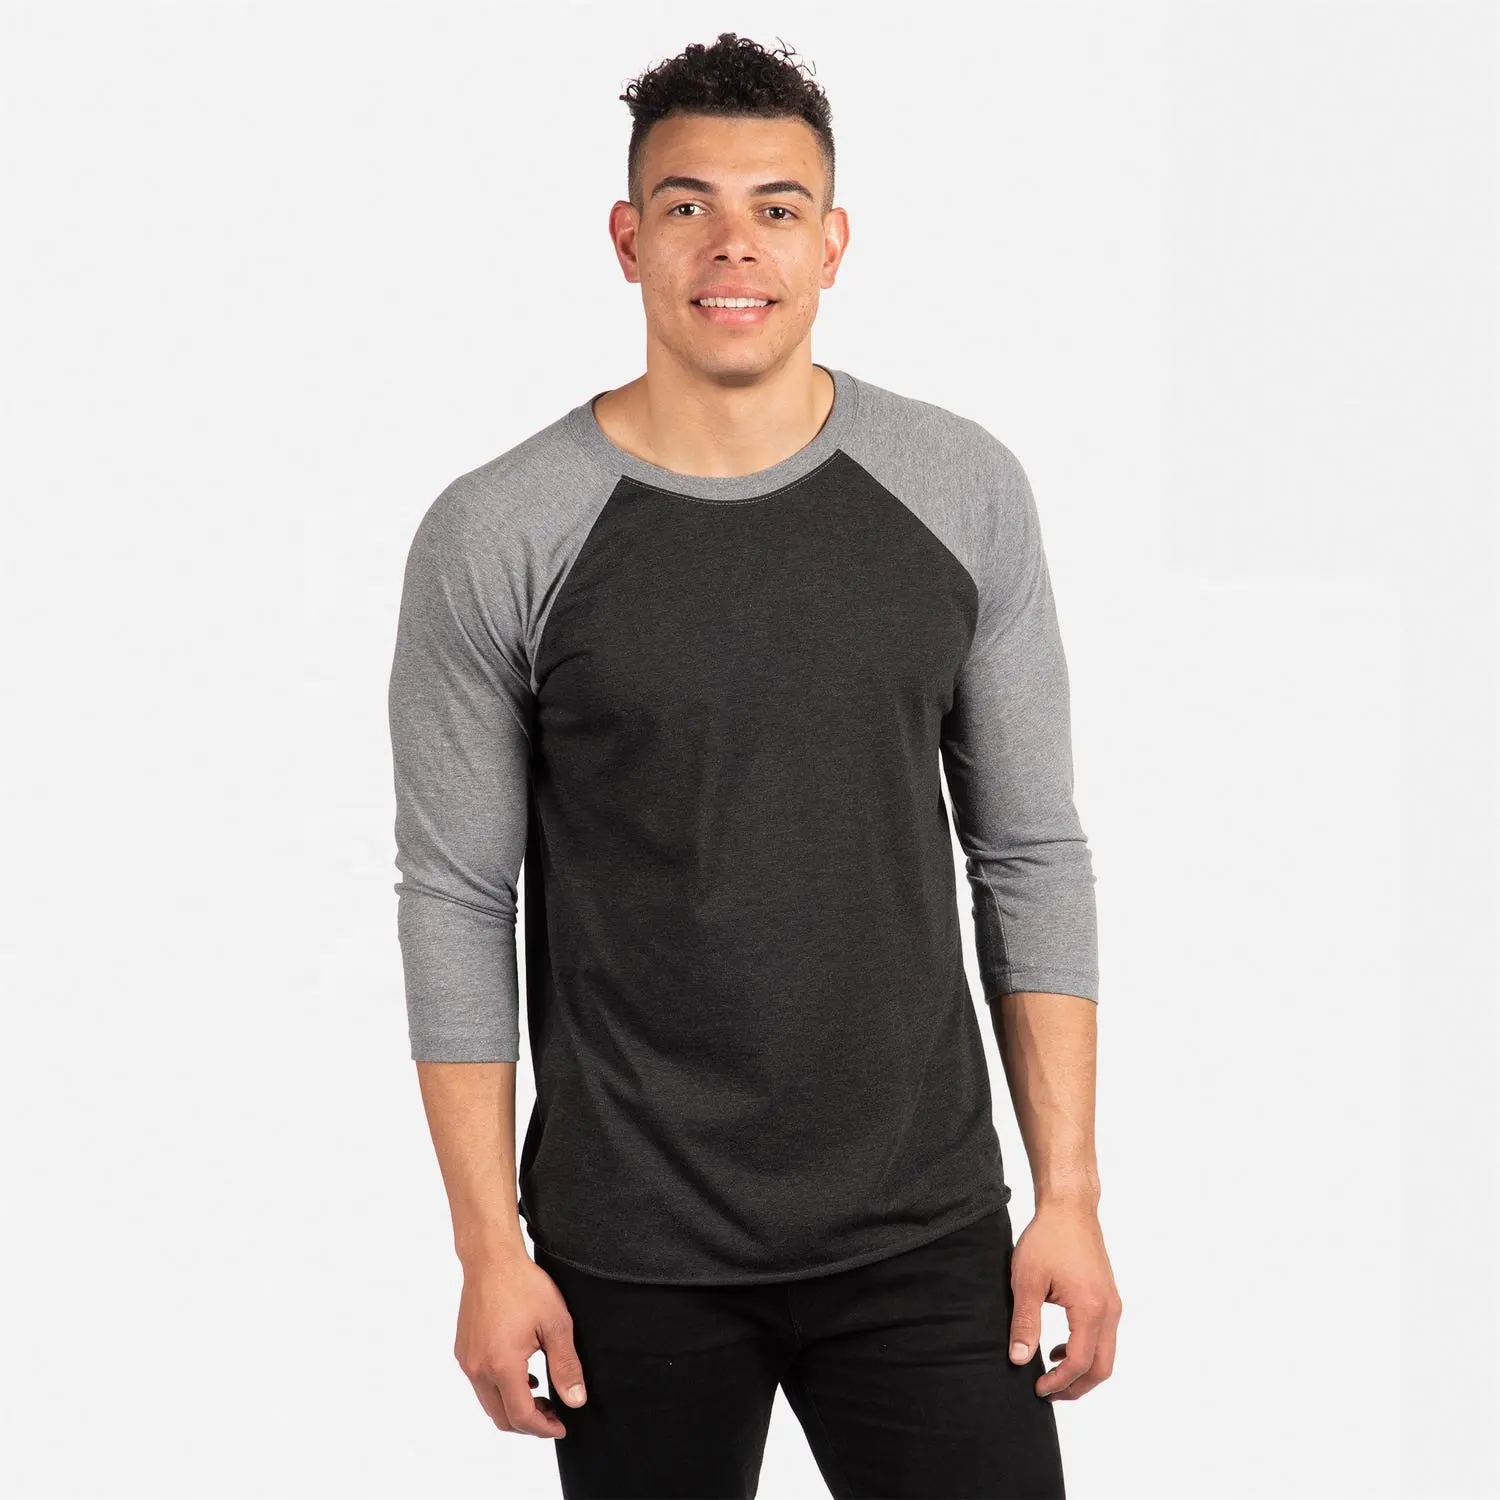 Next Level Apparel Tri-Blend Herren 3/4 Raglan Sleeve T-Shirt aus 50% Polyester, 25% Baumwolle und 25% Rayon atmungsaktiv